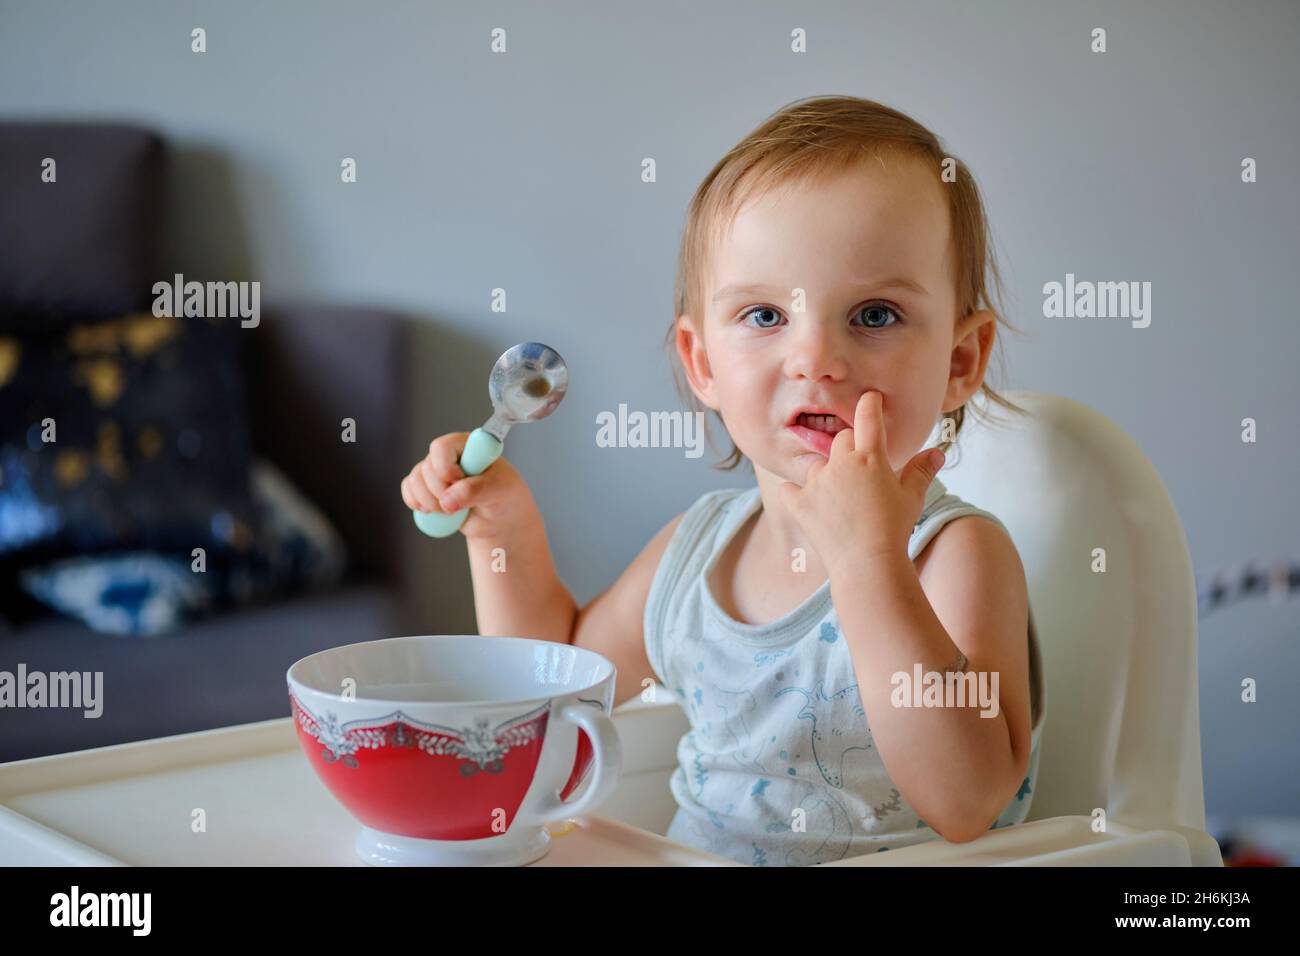 Porträt eines niedlichen kleinen Mädchens, das aus einer Keramikschale Suppe isst und die Kamera anschaut Stockfoto